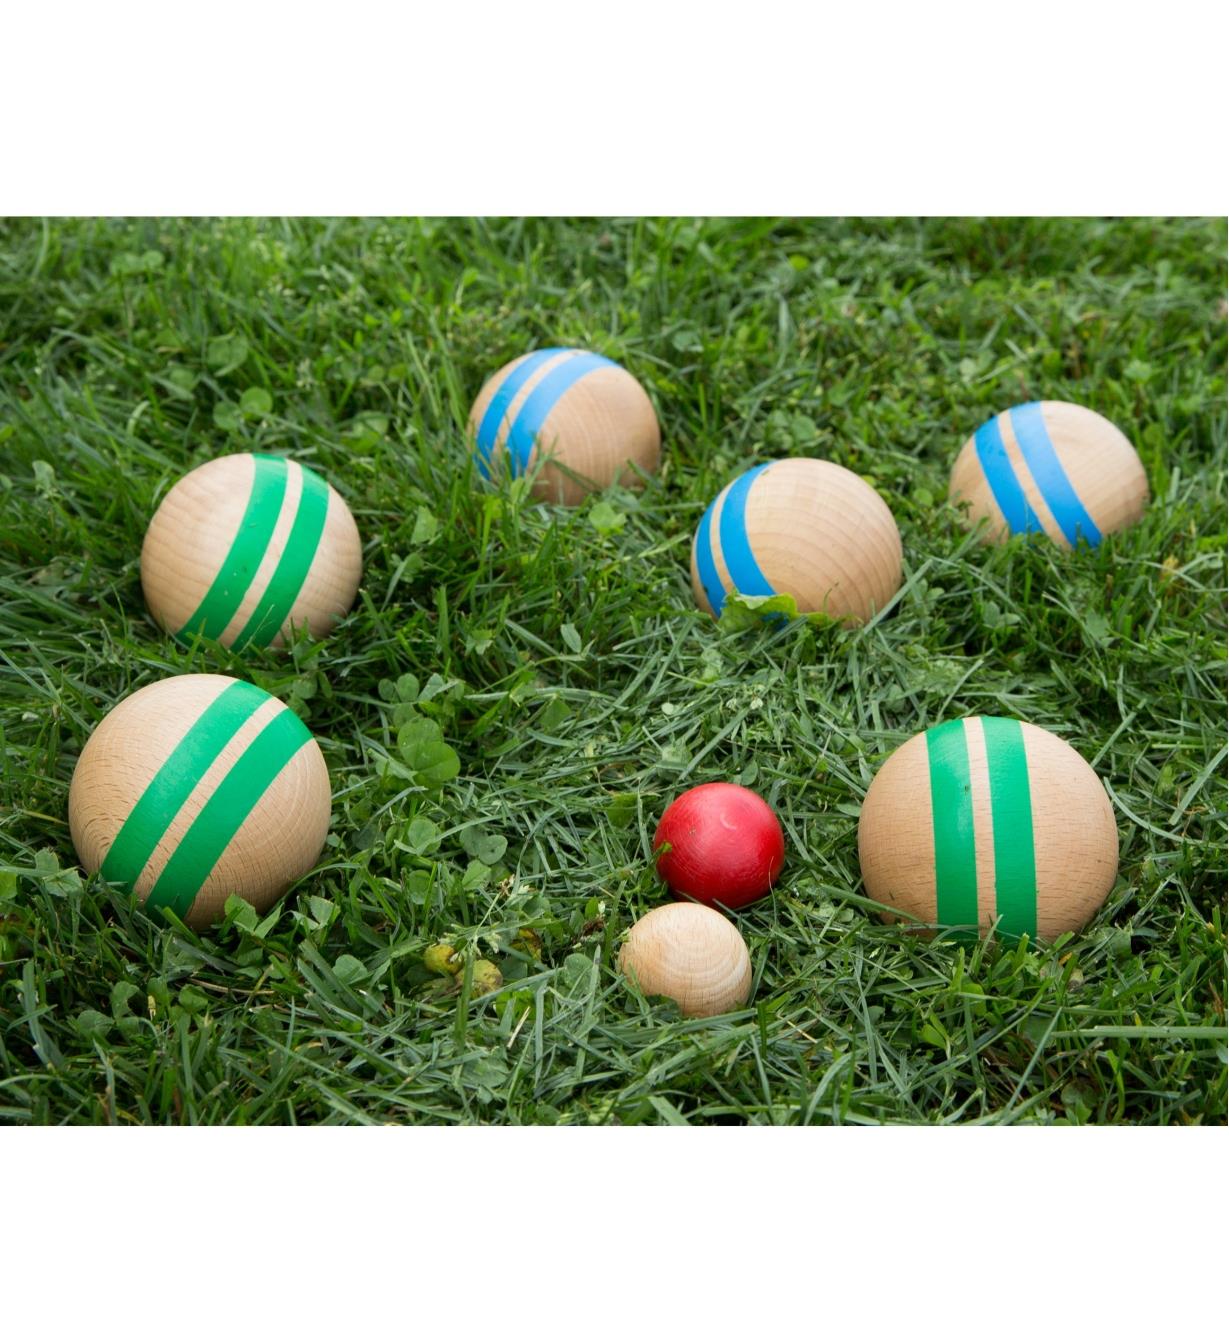 Pétanque balls sitting on grass